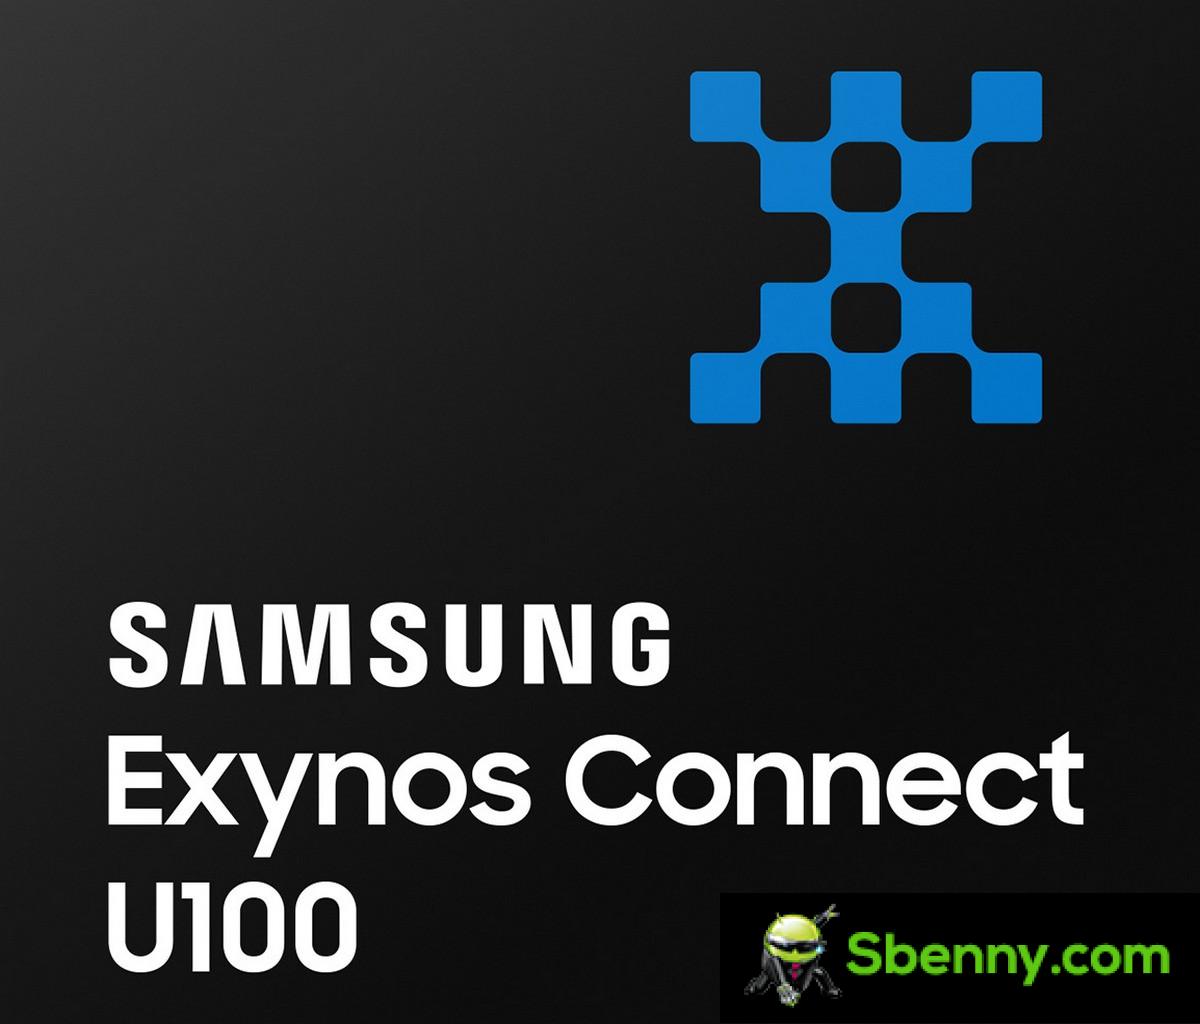 三星推出超宽带芯片组 Exynos Connect U100